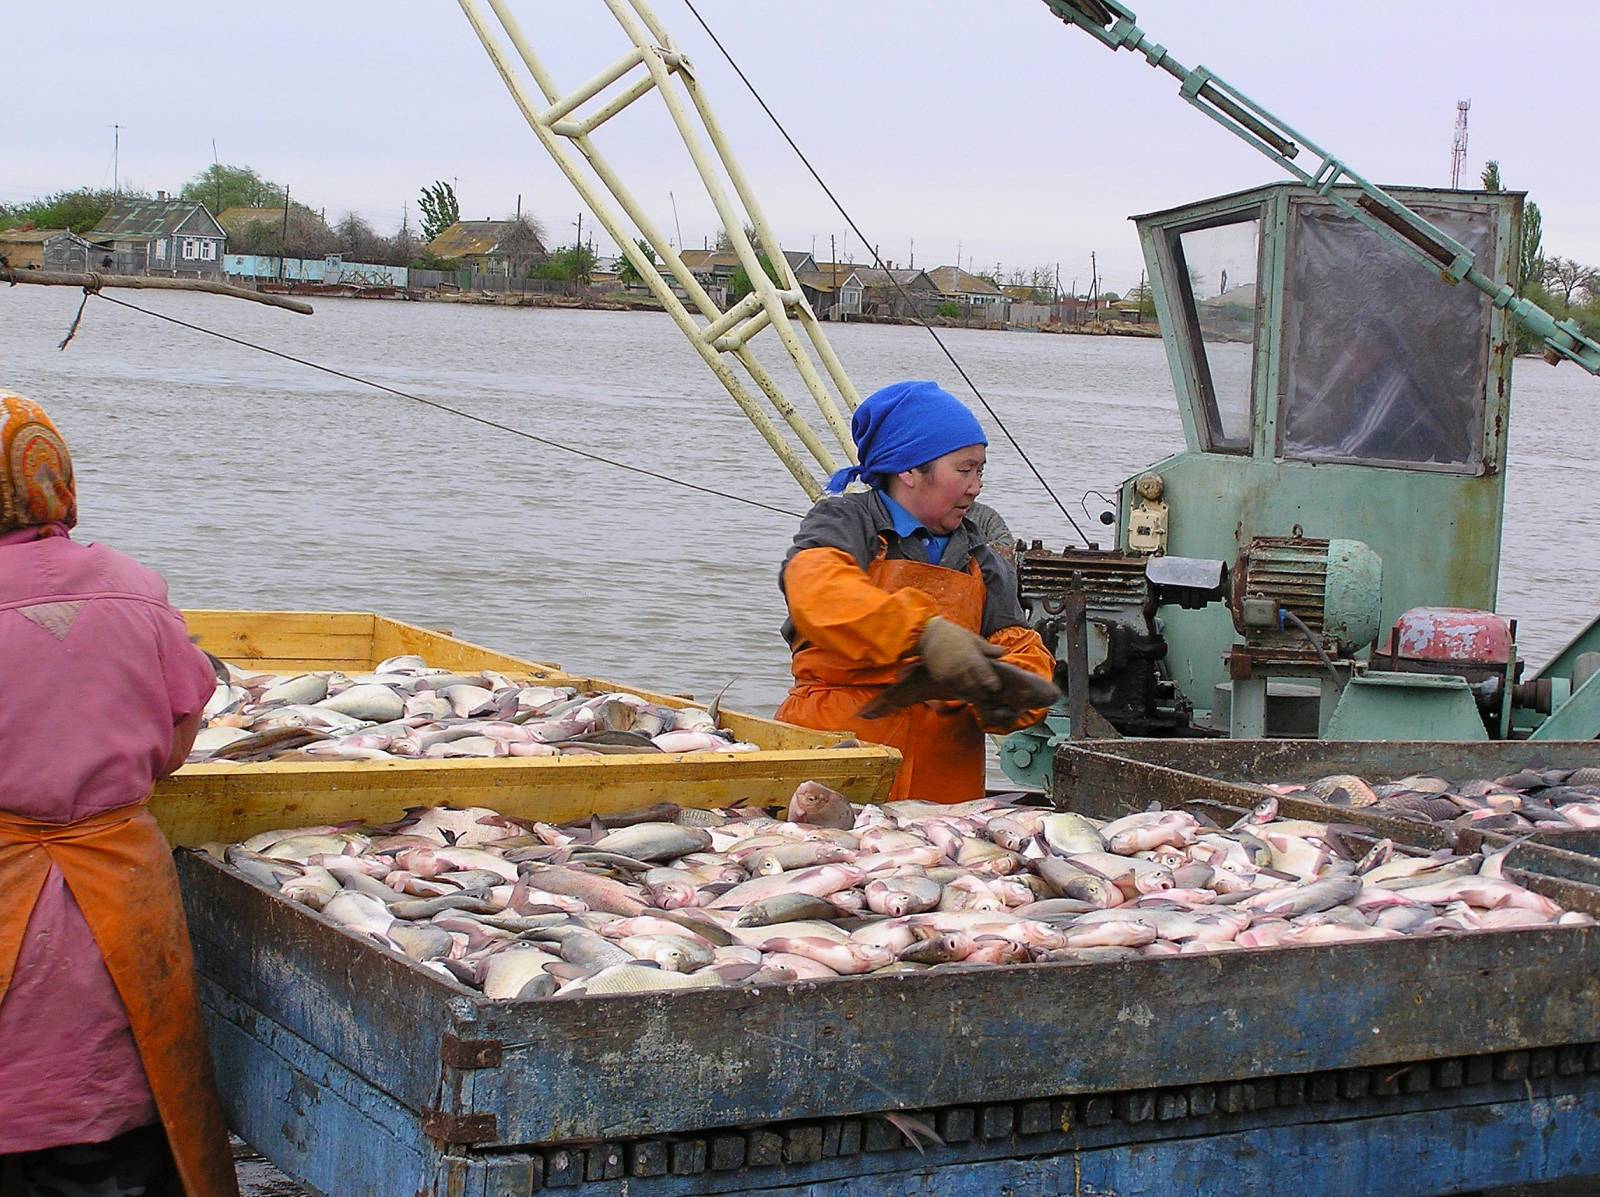 Какой промысел был распространен в районе астрахани. Астраханский рыбный промысел, Астрахань. Рыбная промышленность Астрахань. Рыбоперерабатывающий комбинат Астрахань. Цимлянский рыбокомбинат.